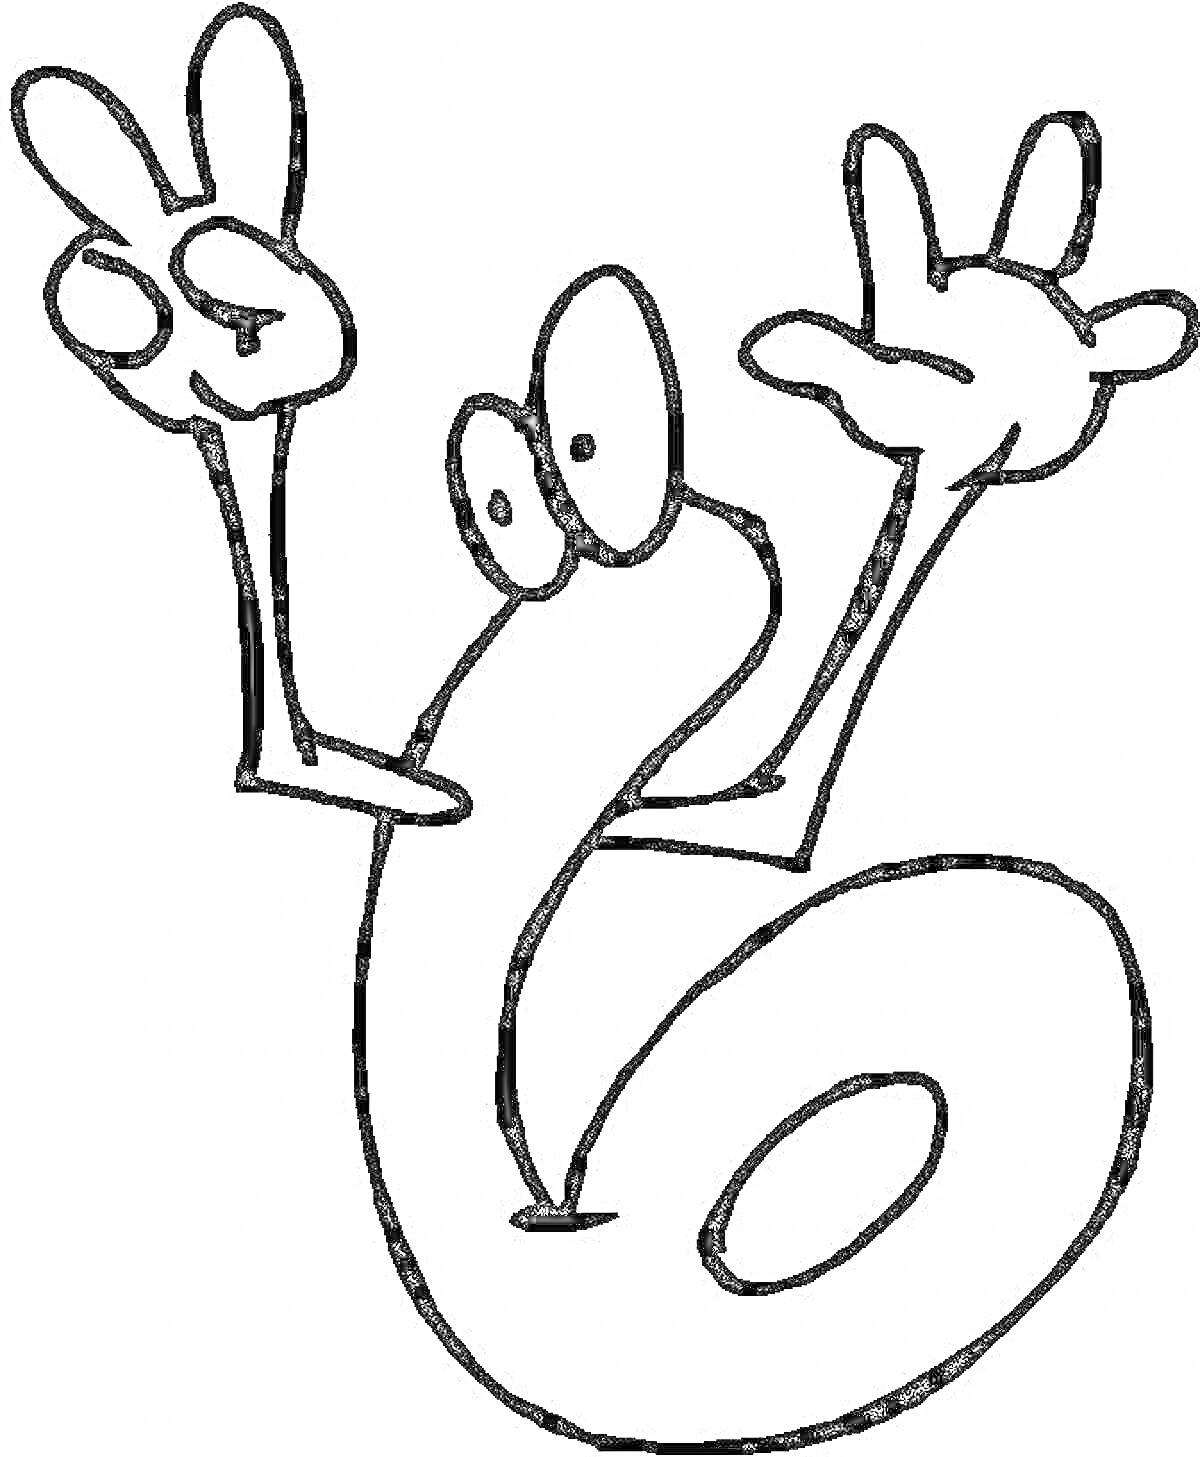 Раскраска Число 6 с руками, показывающими жесты (два пальца вверх)